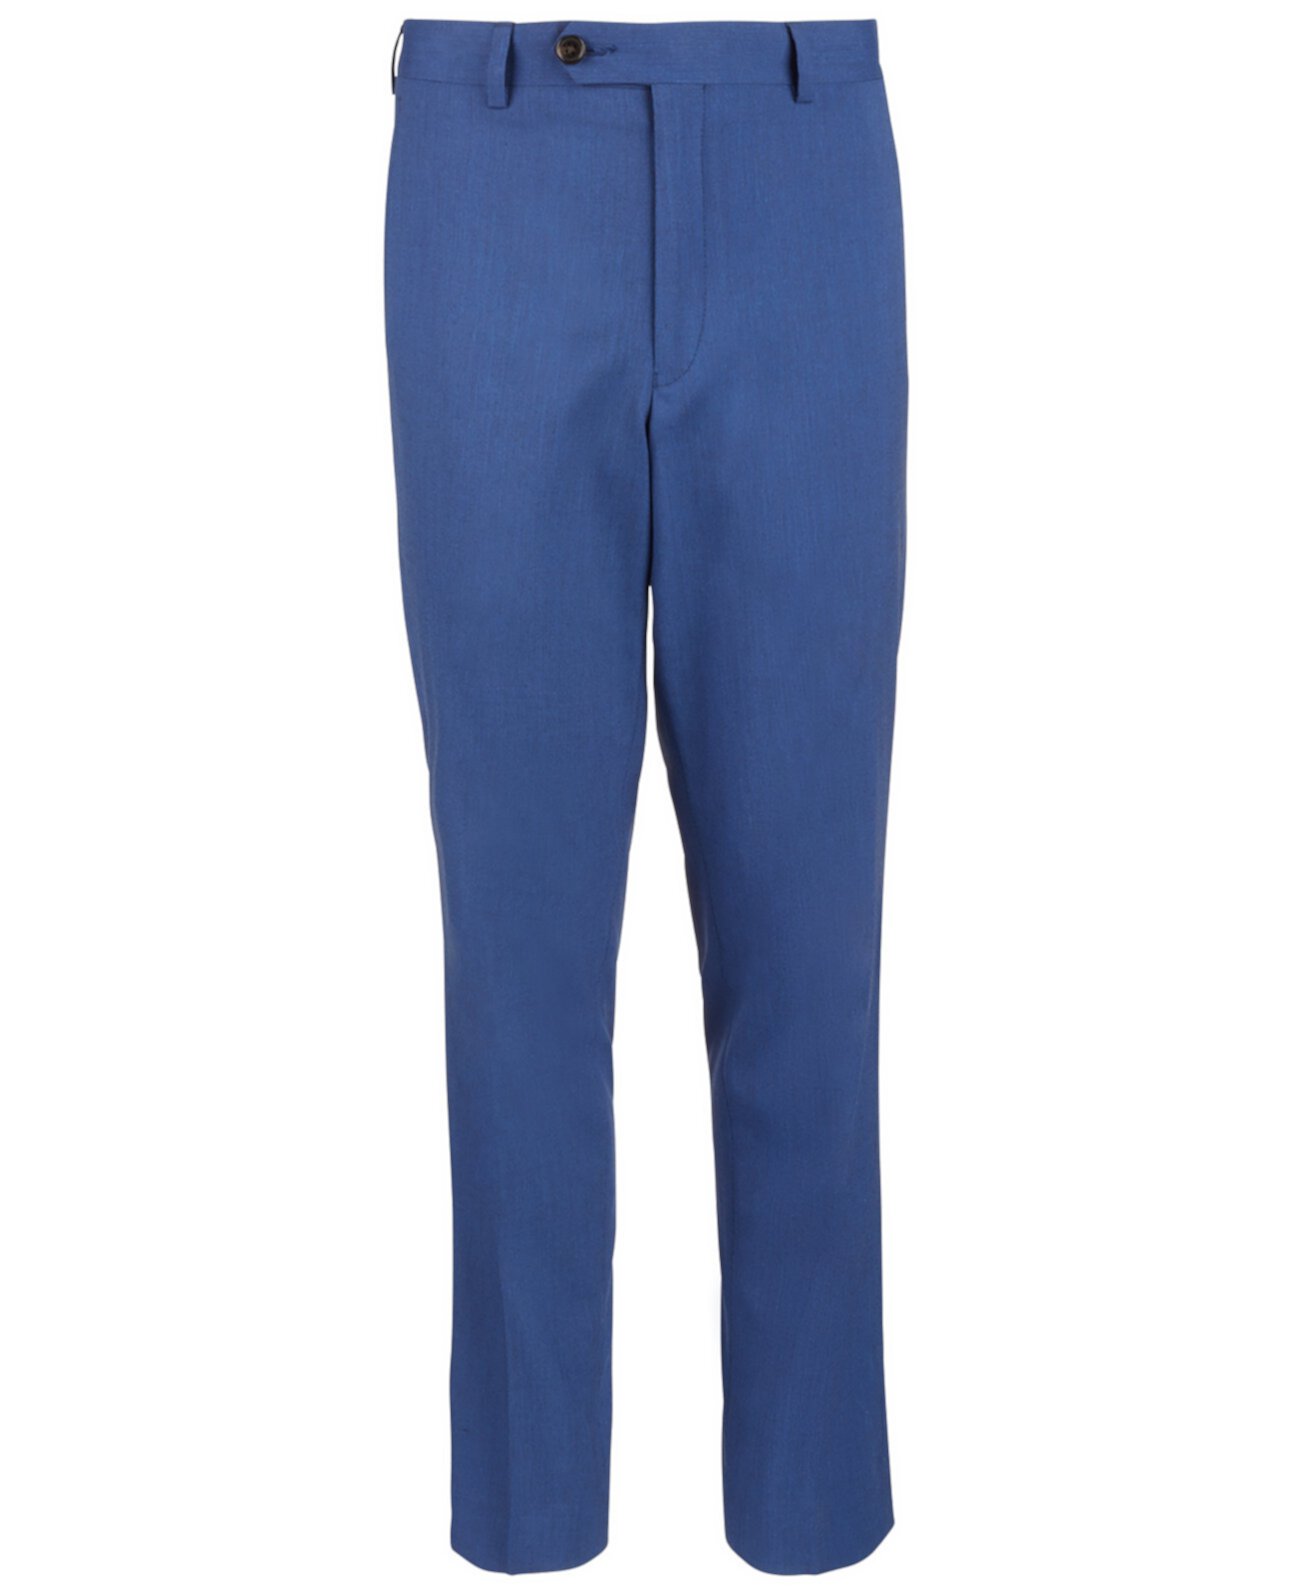 Синие классические брюки в классическом стиле Big Boys Ralph Lauren